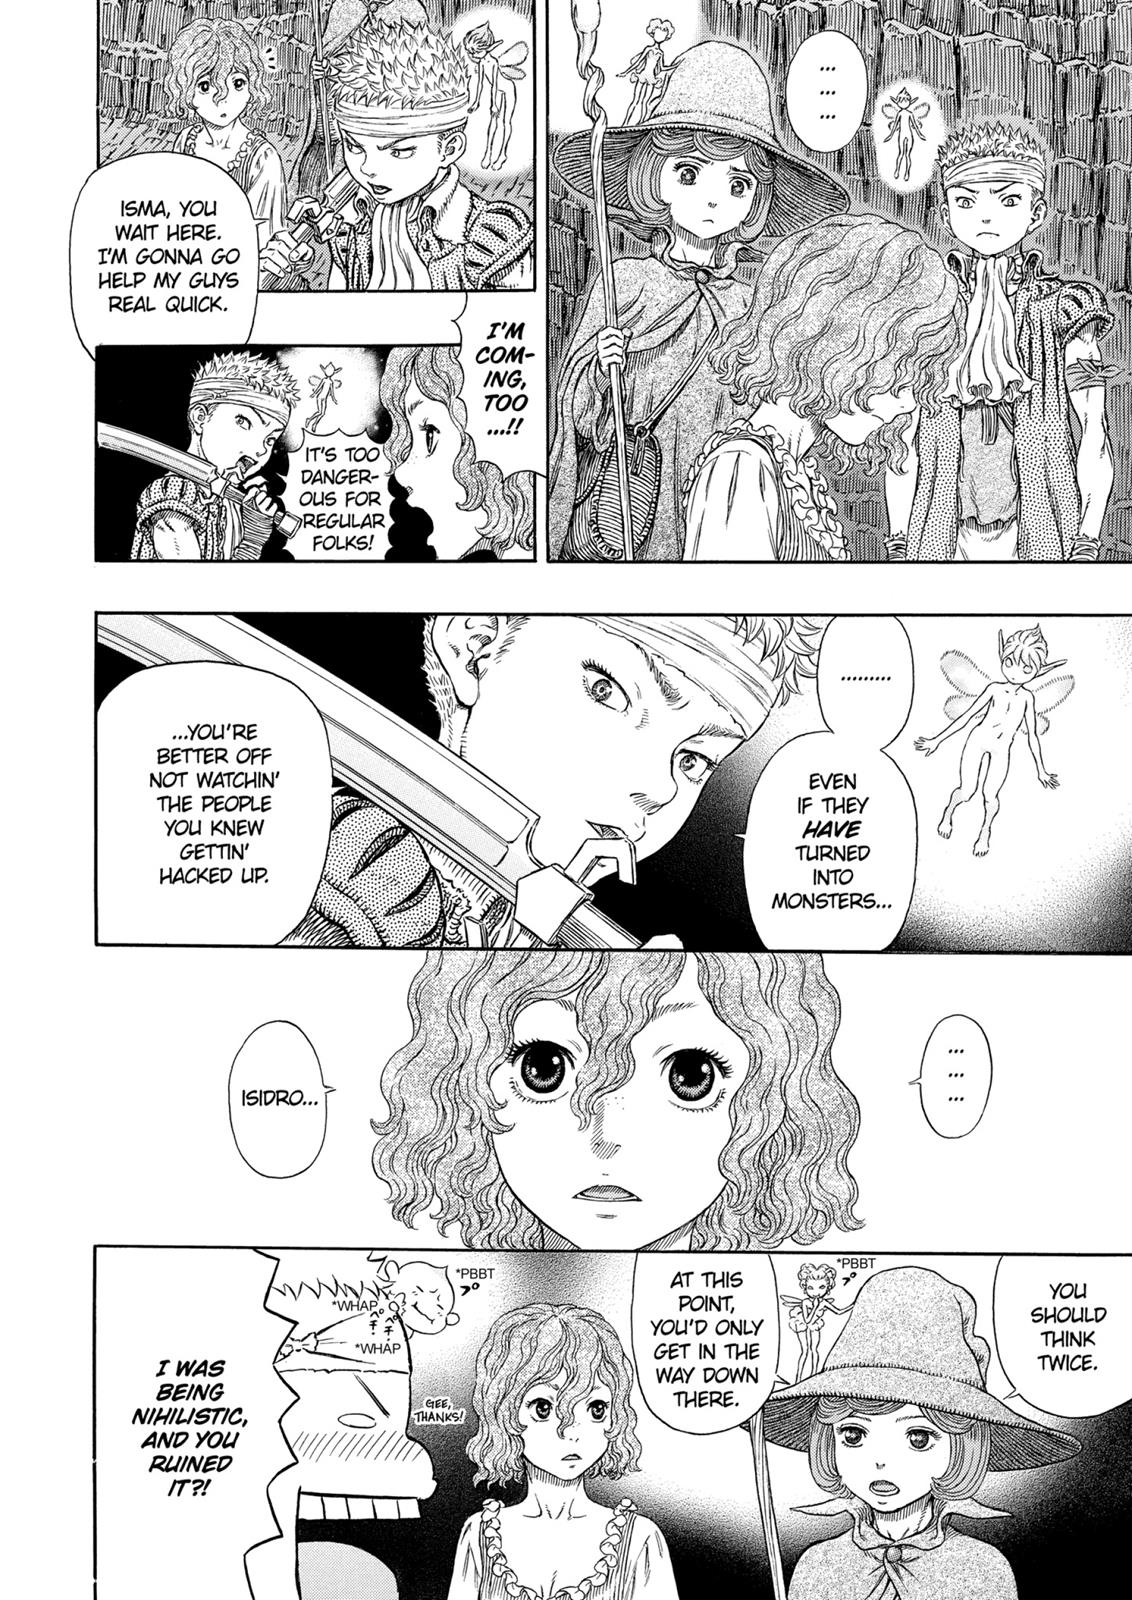 Berserk Manga Chapter 316 image 18